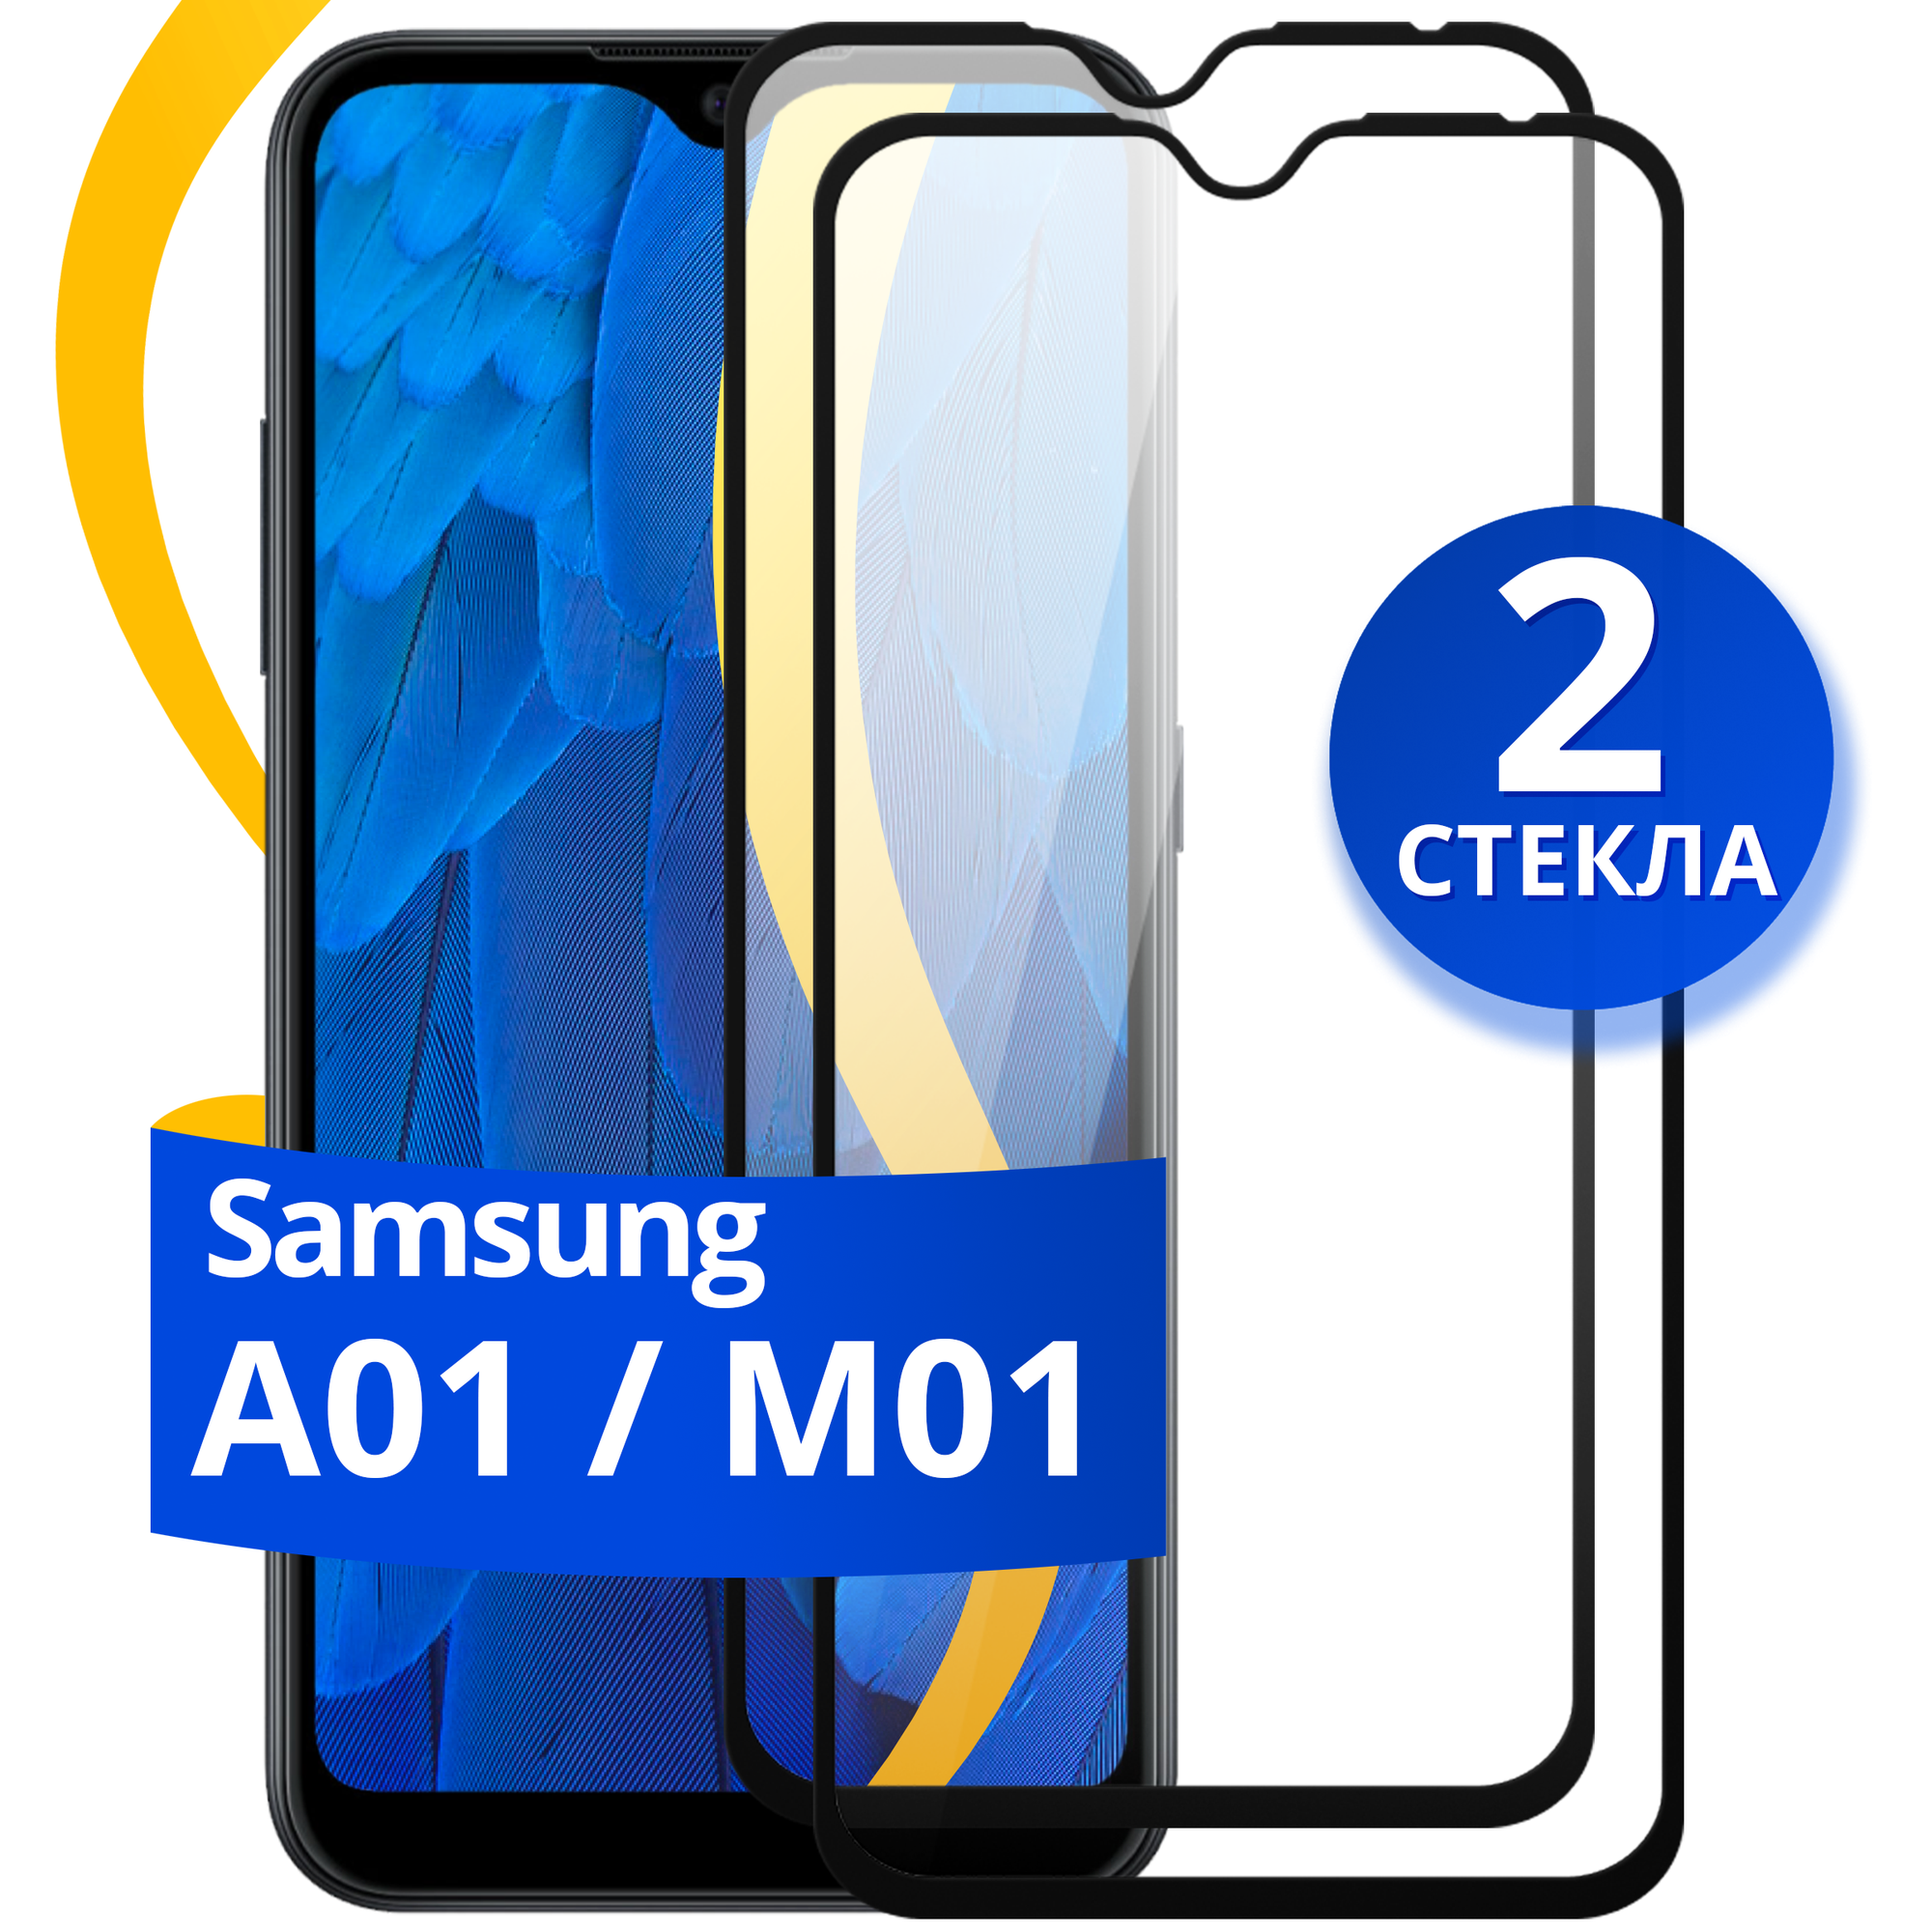 Комплект из 2 шт. Глянцевое защитное стекло для телефона Samsung Galaxy A01 и M01 / Противоударное стекло на cмартфон Самсунг Галакси А01 и М01